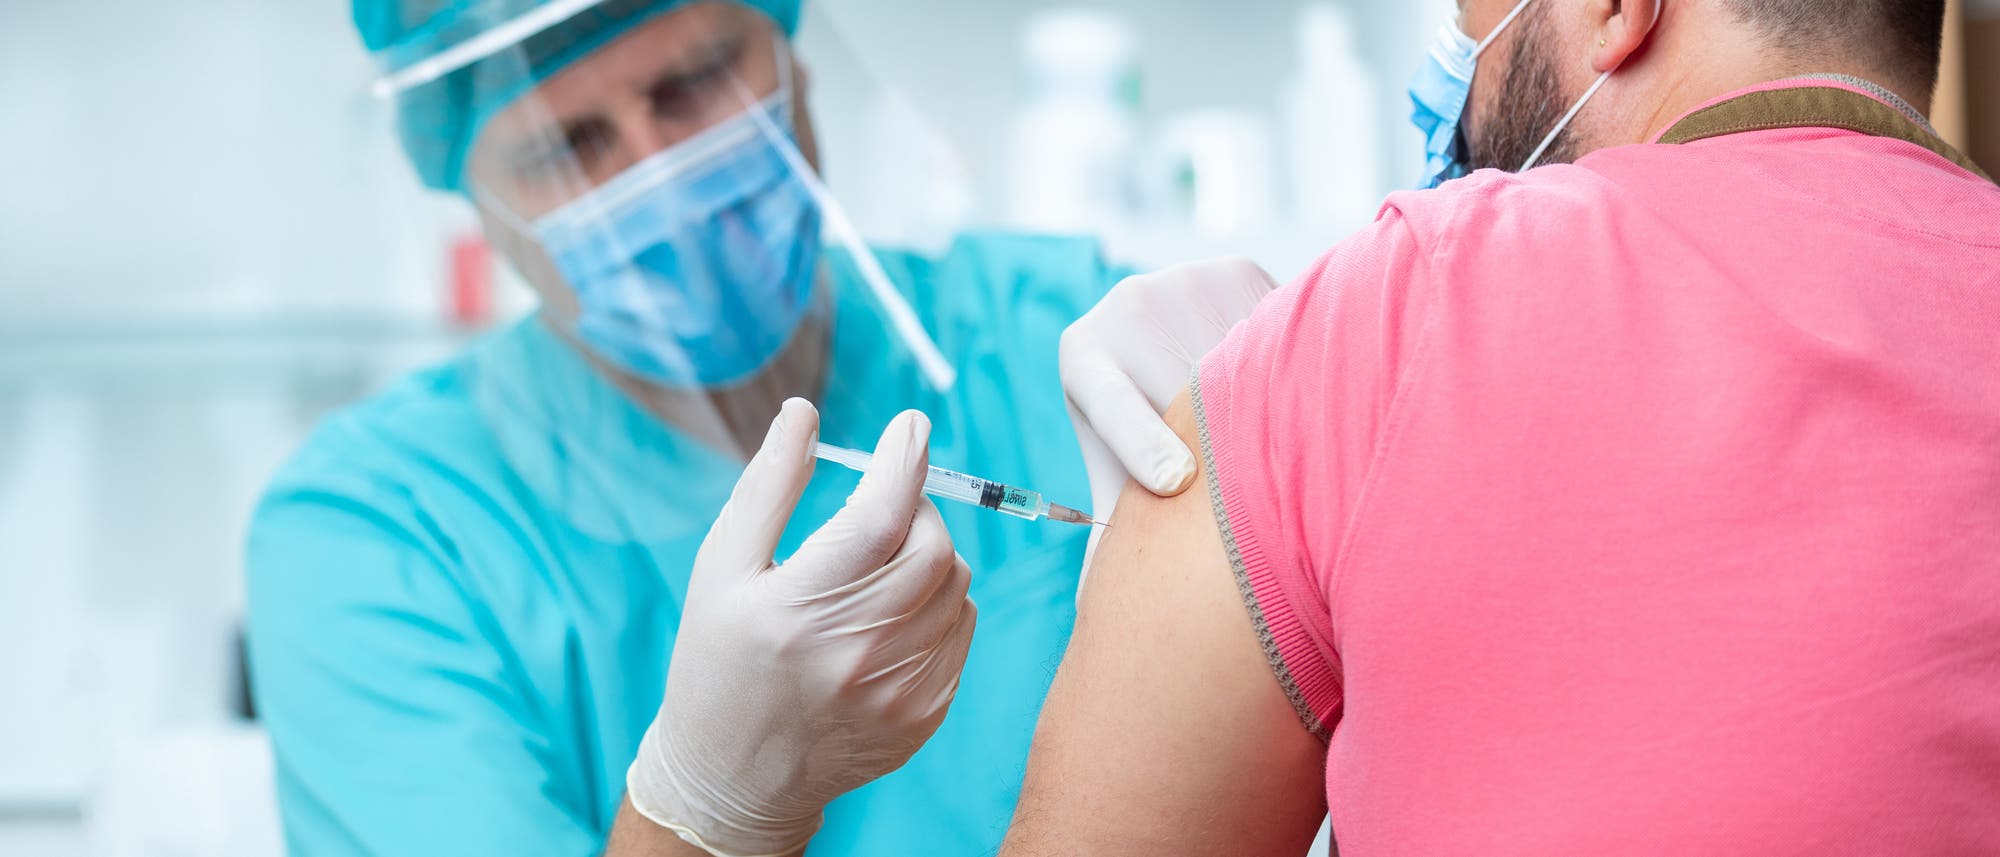 Sobald es einen Covid-Impfstoff gibt, stellt sich die Frage: Wer bekommt ihn zuerst?